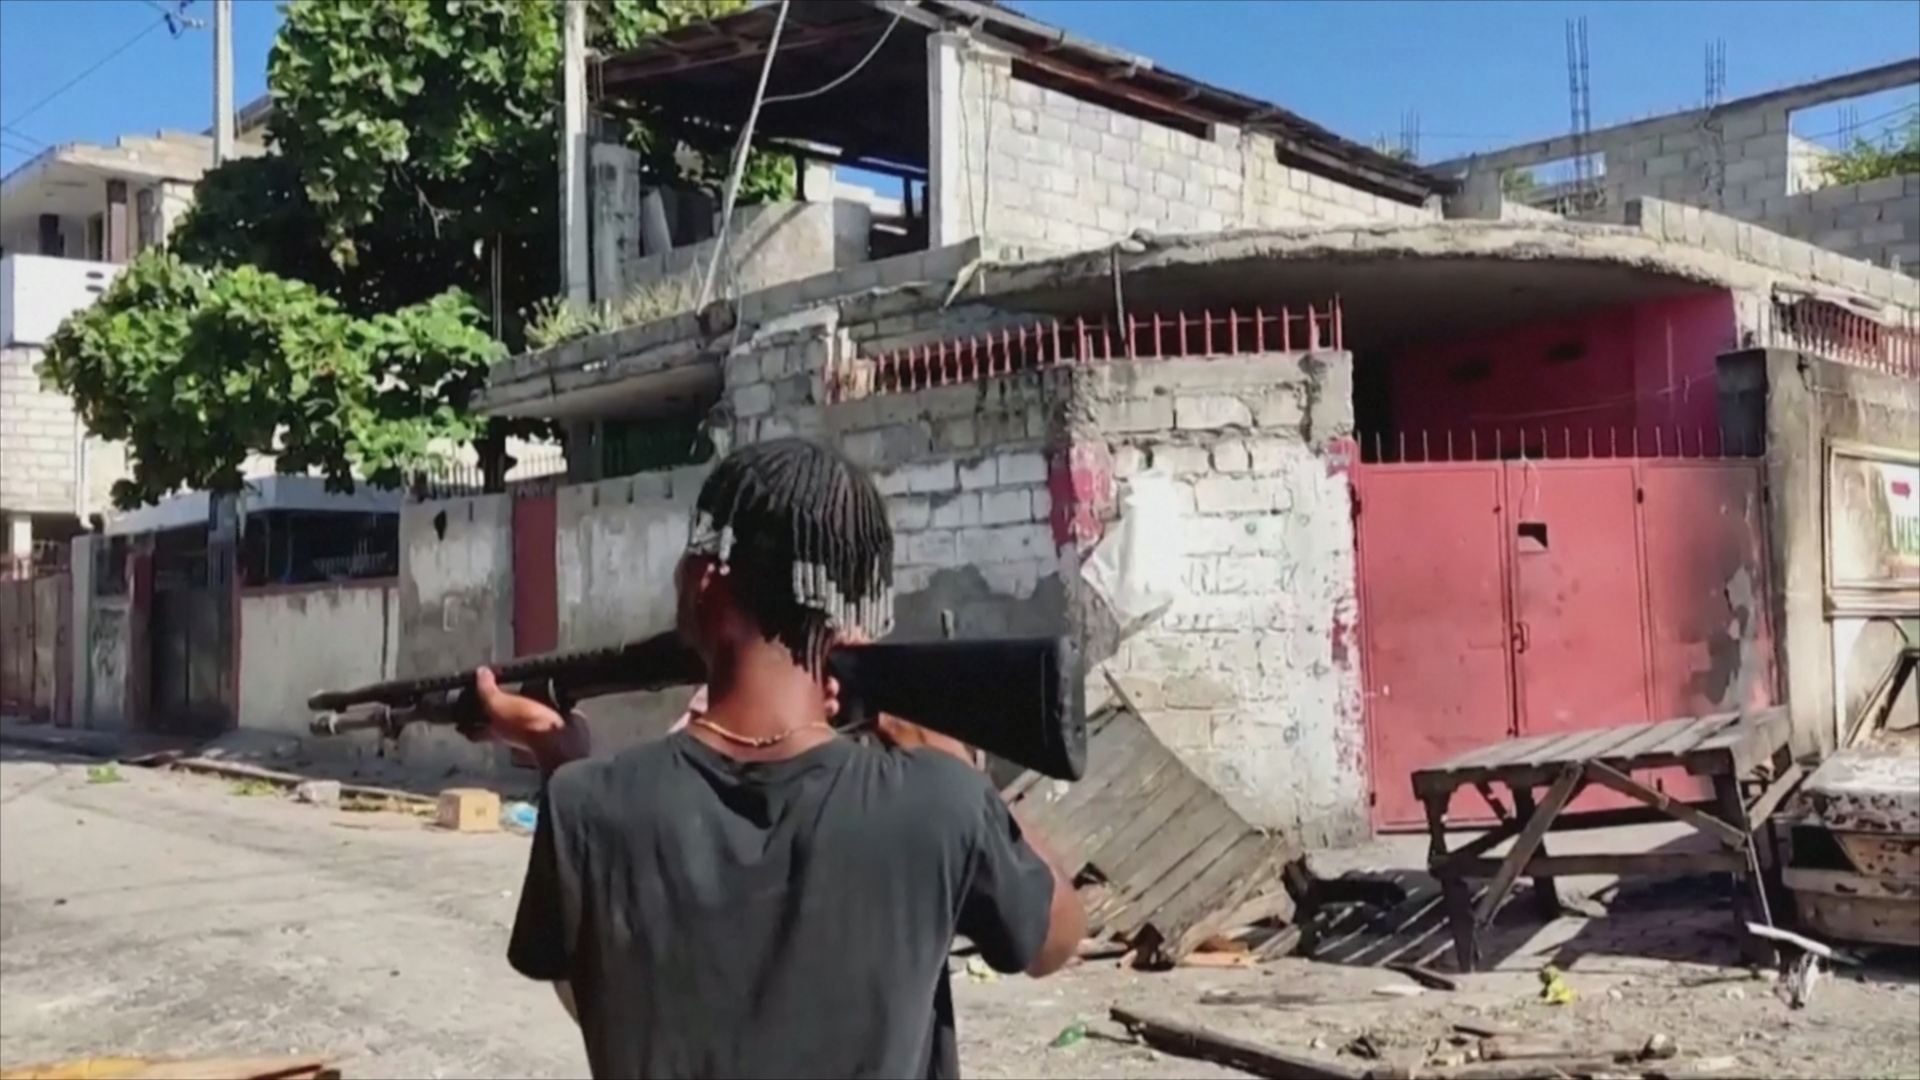 В столице Гаити людей уже почти неделю терроризируют бандиты